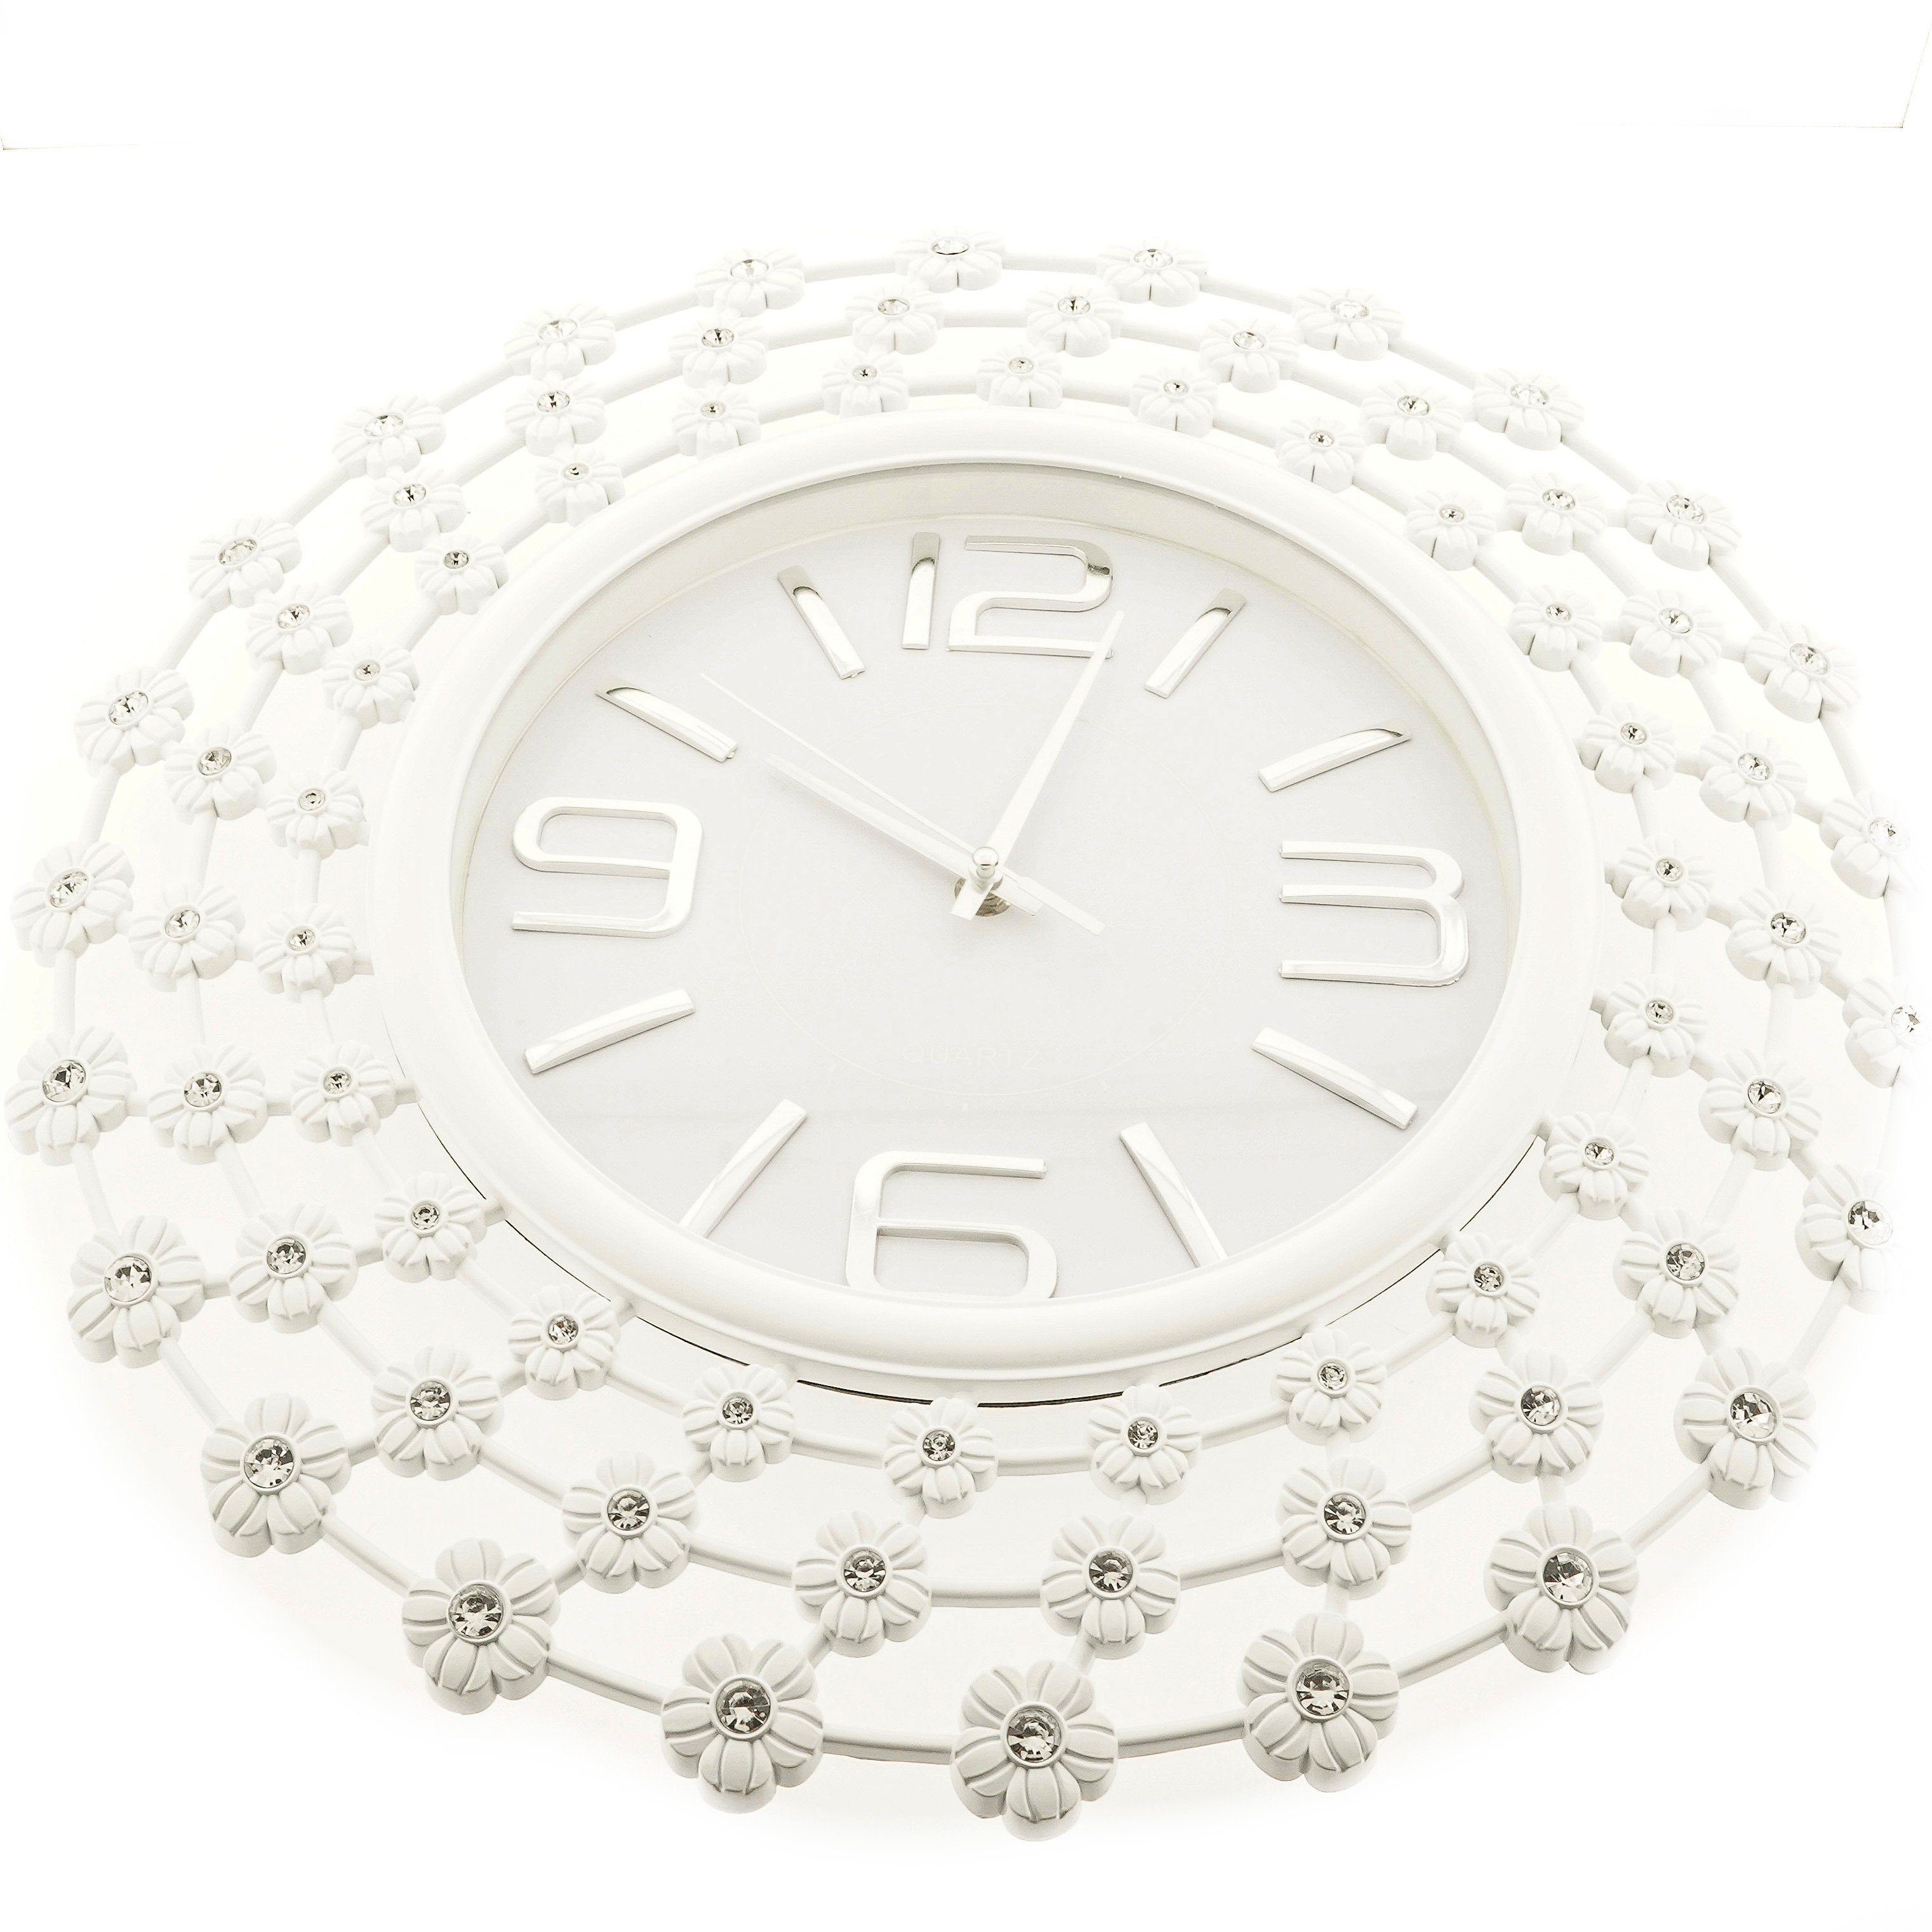 modernes Wanduhr Uhr Wanduhr Weiß Almina Wohnzimmer Design Quartz